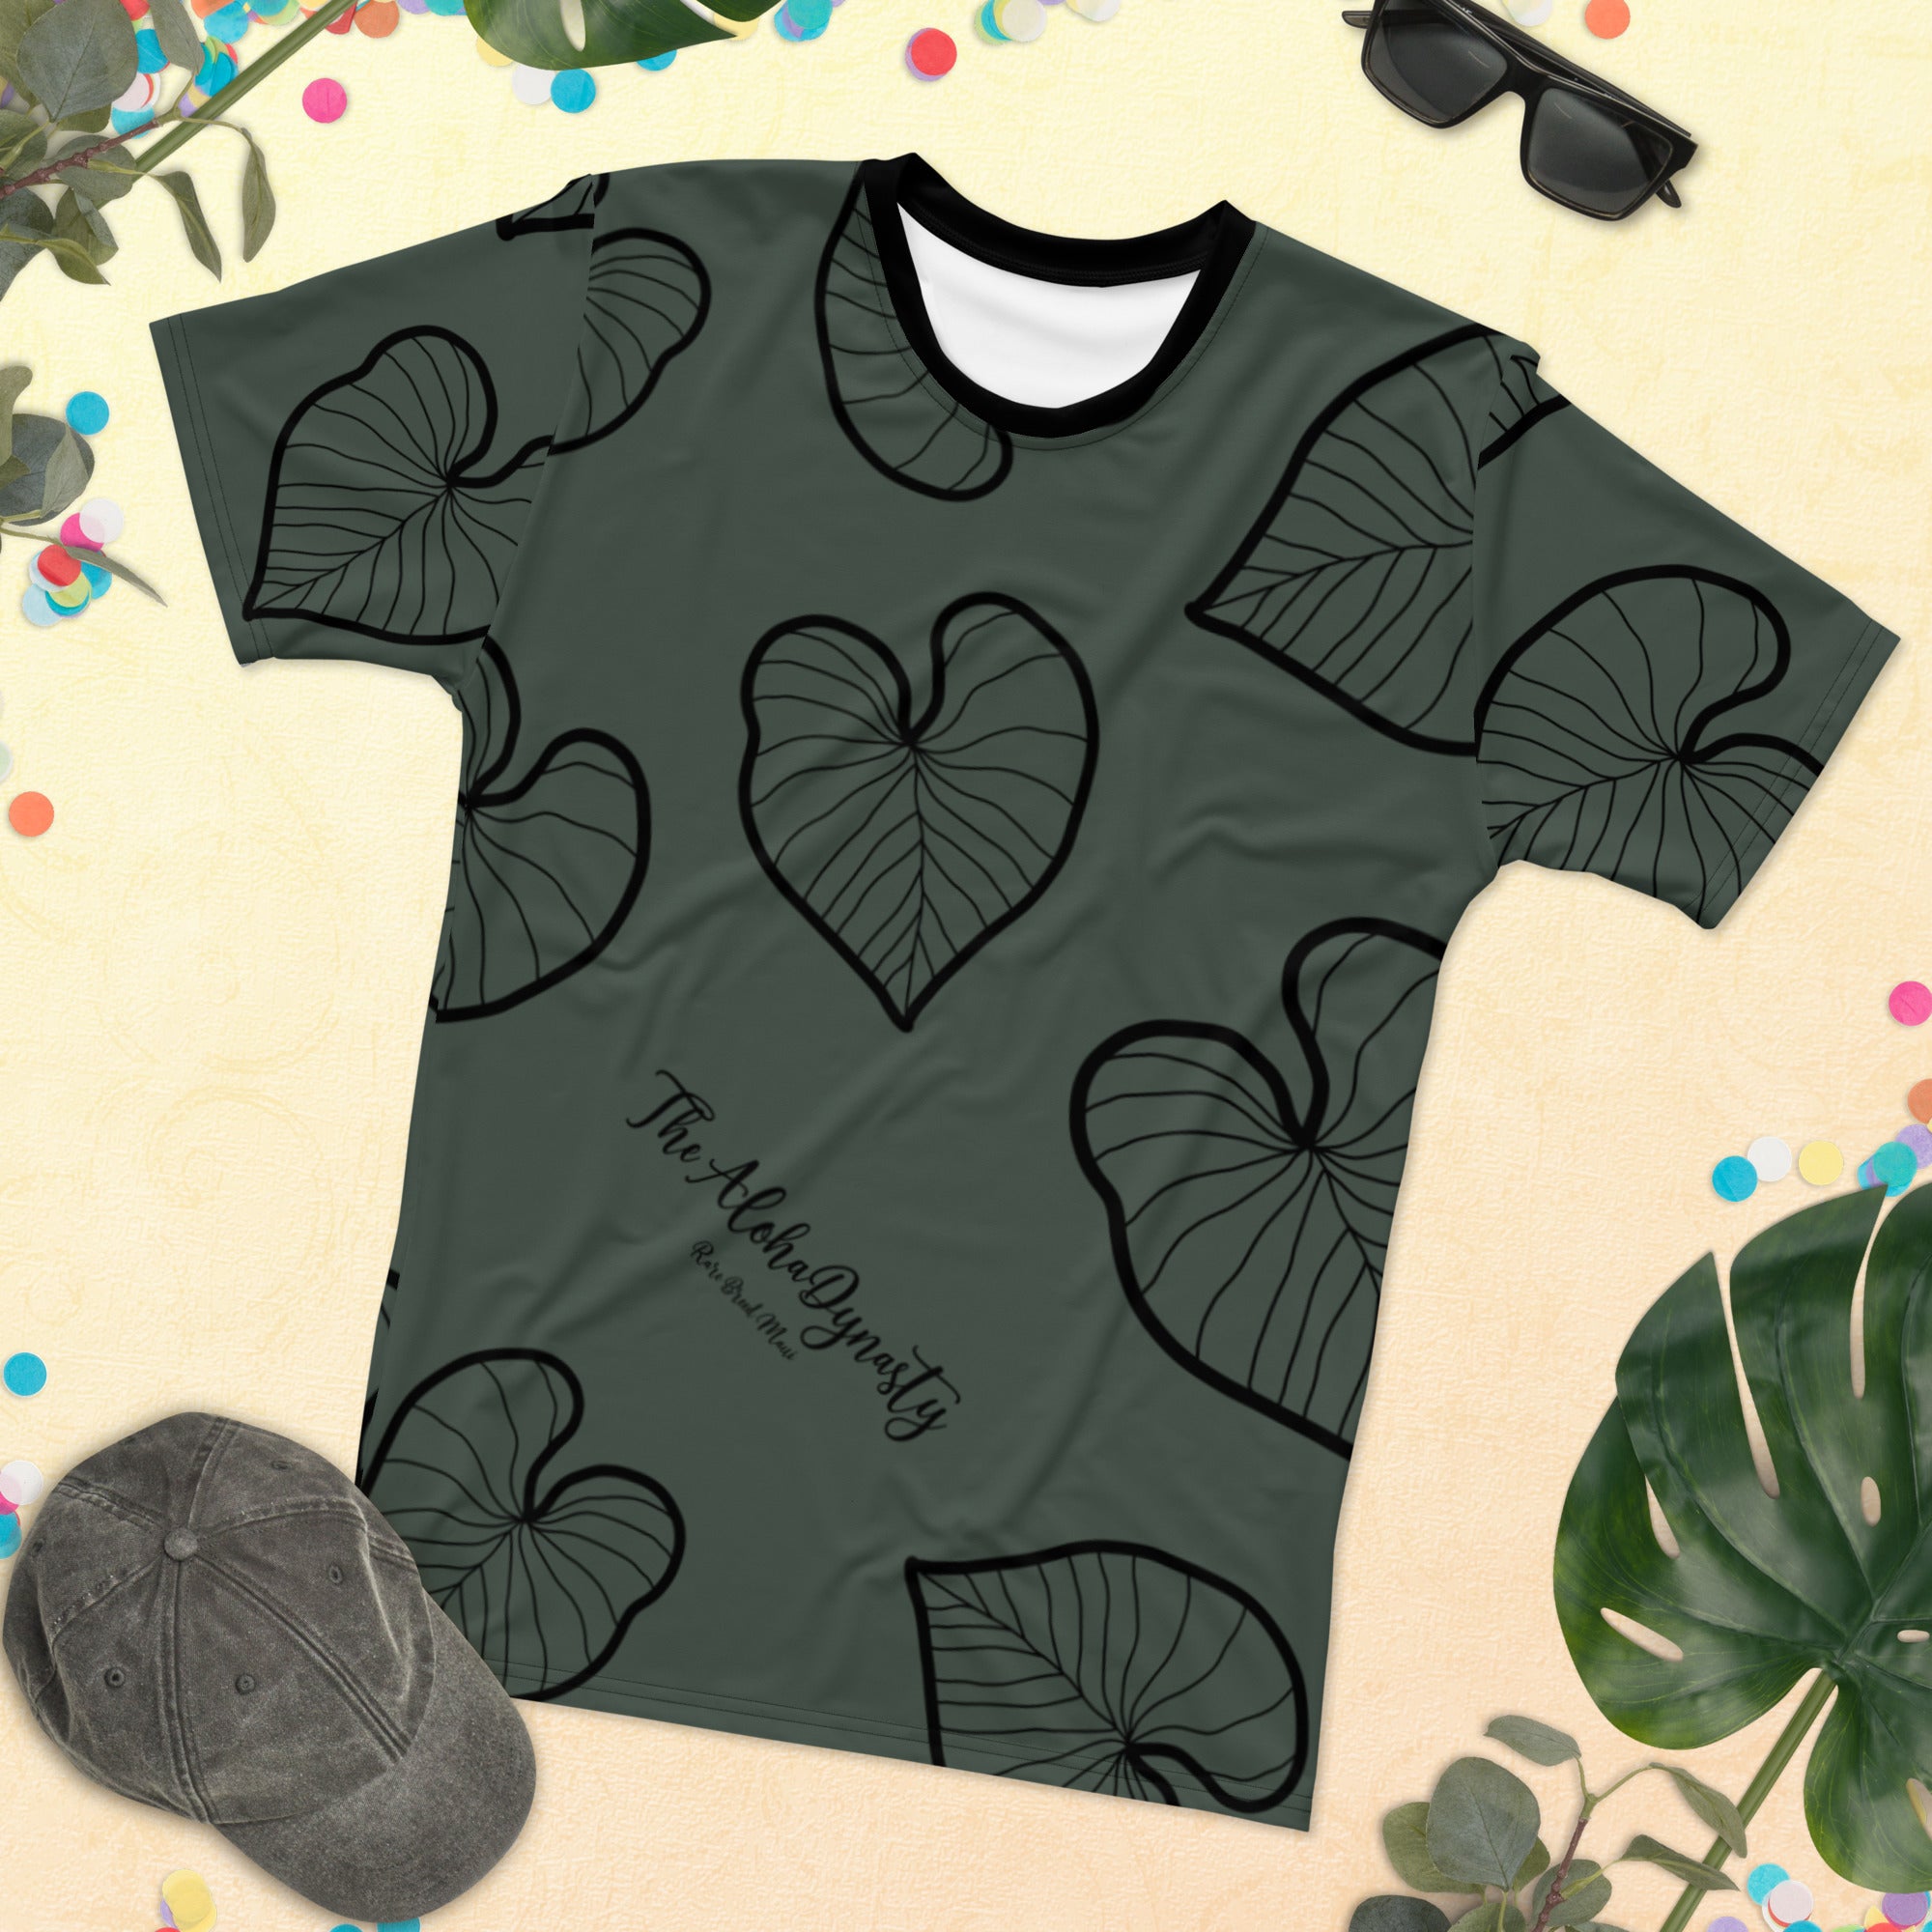 Kalo Taro Hawaiian Print Design T-Shirt